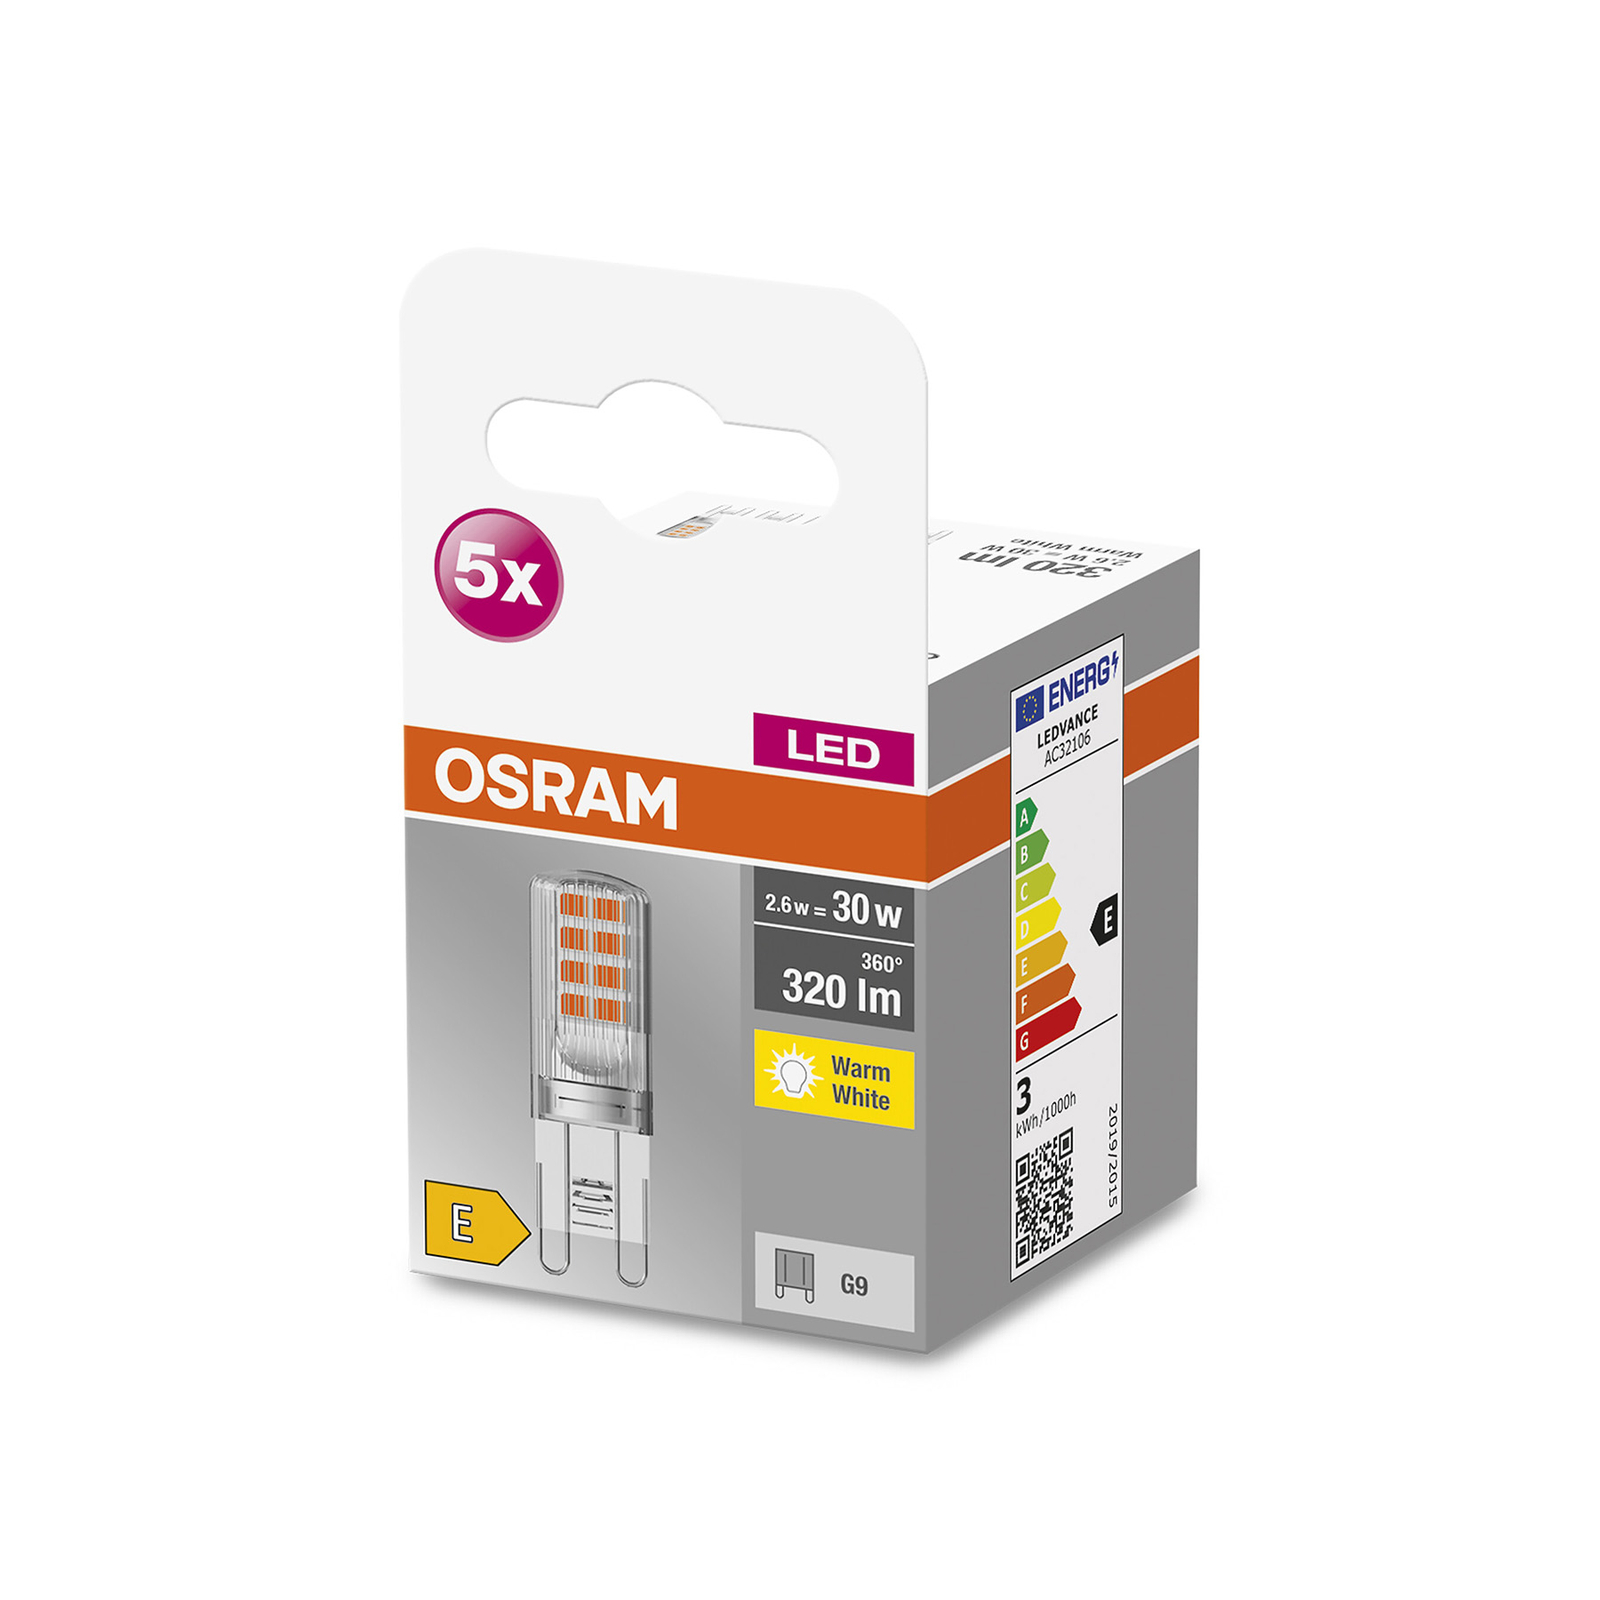 OSRAM Base PIN LED bispina G9 2,6W 320lm 5x